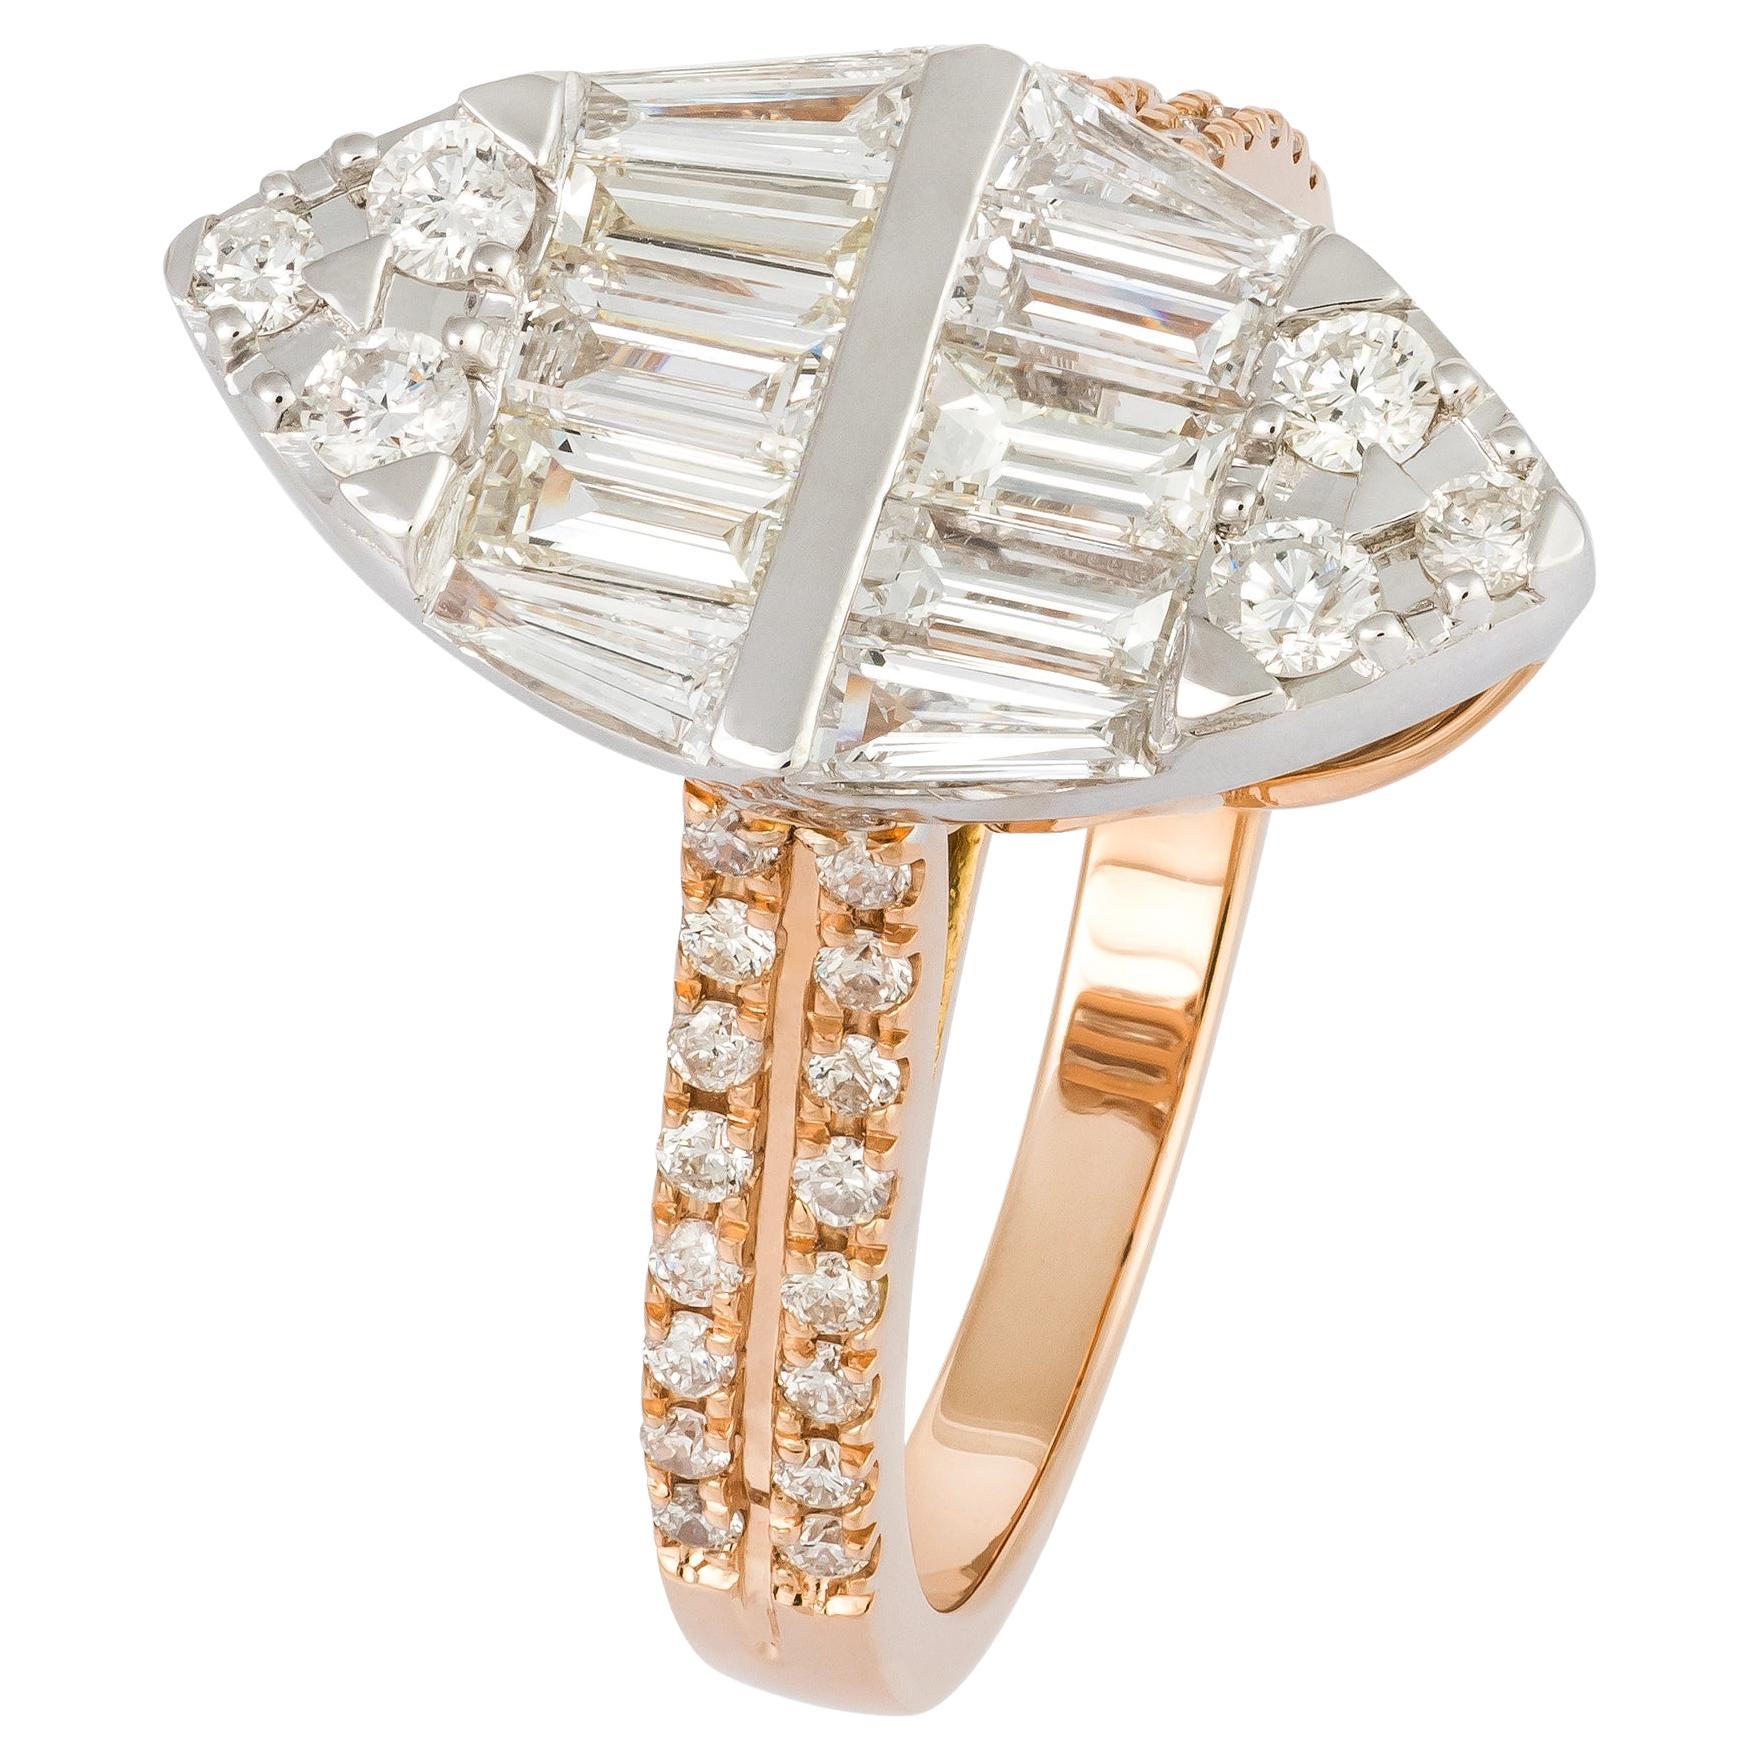 Modern White Pink 18K Gold White Diamond Ring for Her